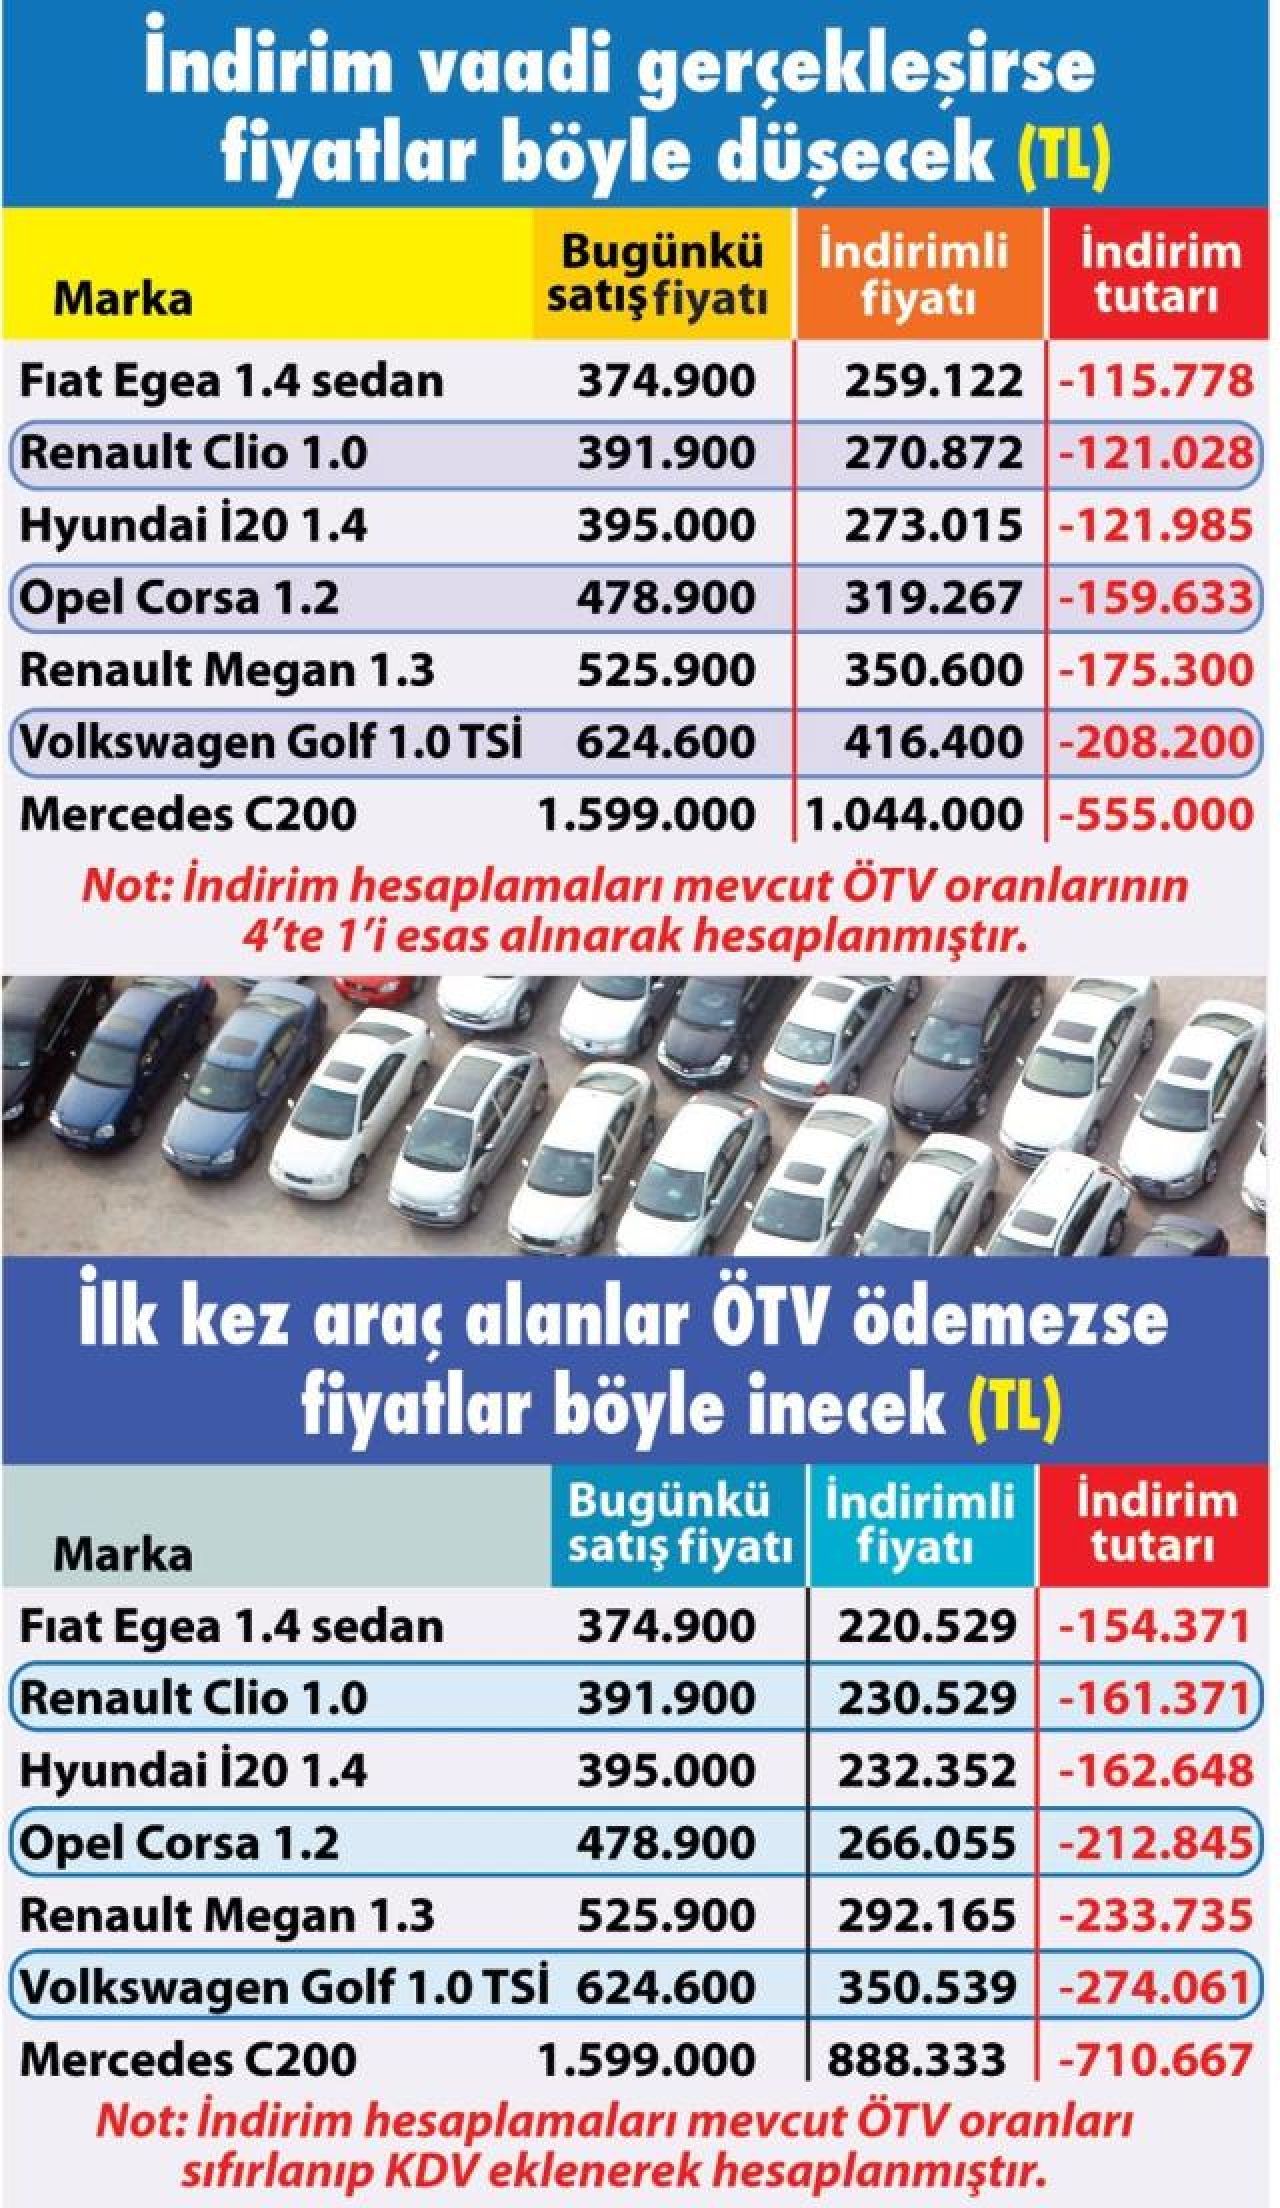 İkinci elde ÖTV etkisi daha karar çıkmadan hissedildi! ÖTV'siz araç satışı için açıklama yetti, sıfırından önce 2.el araç fiyatları düştü 2